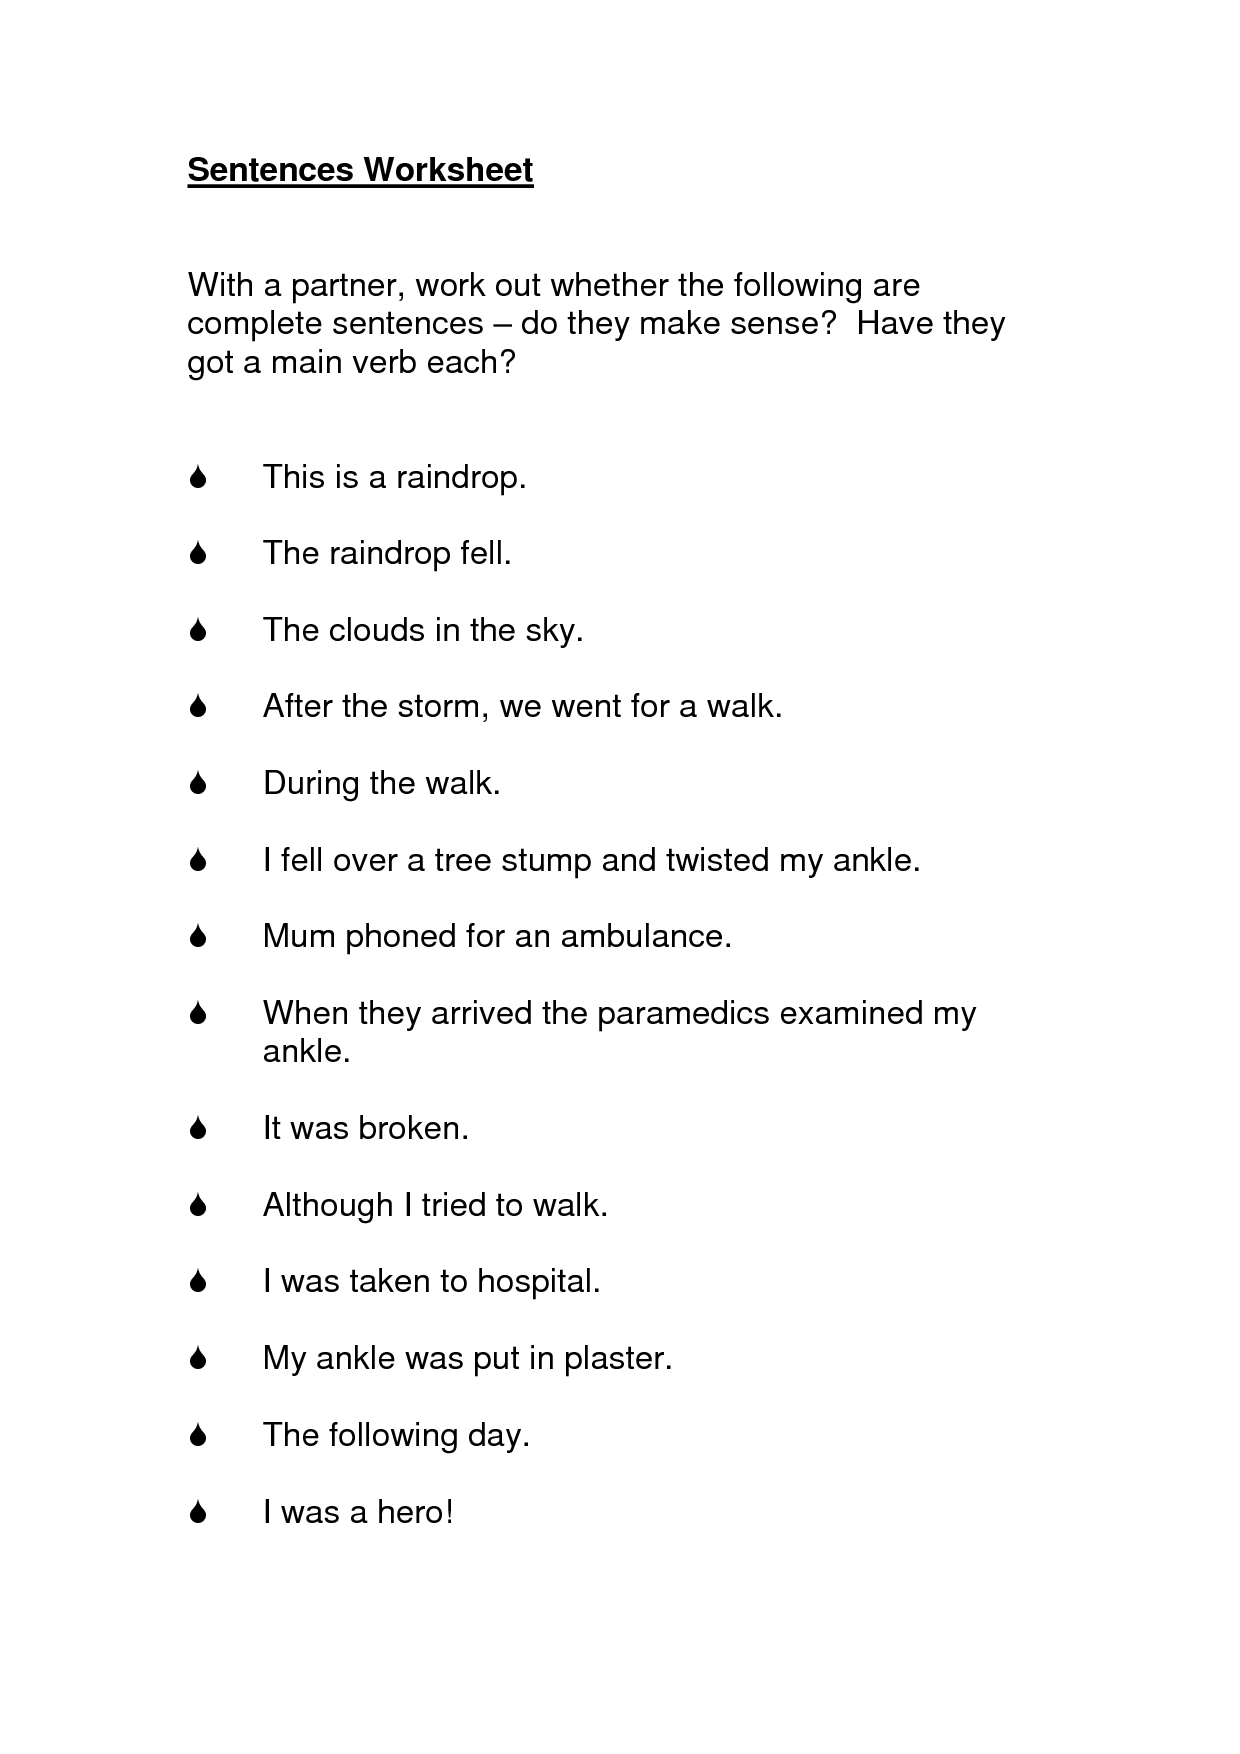 Complete Sentences Worksheets Image